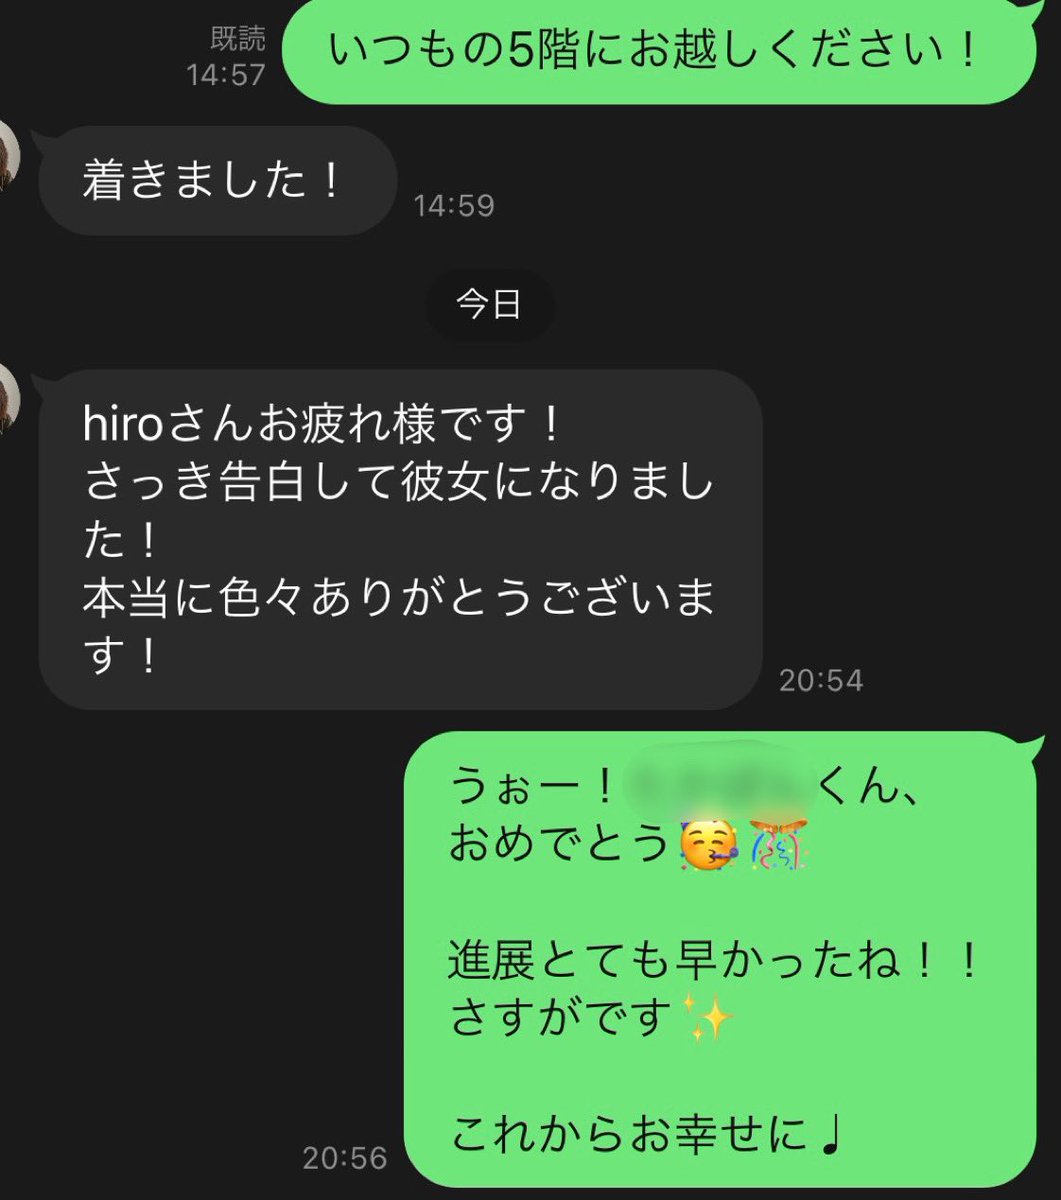 Hiro 奥手男子専門コーチ Rotox7 Twitter